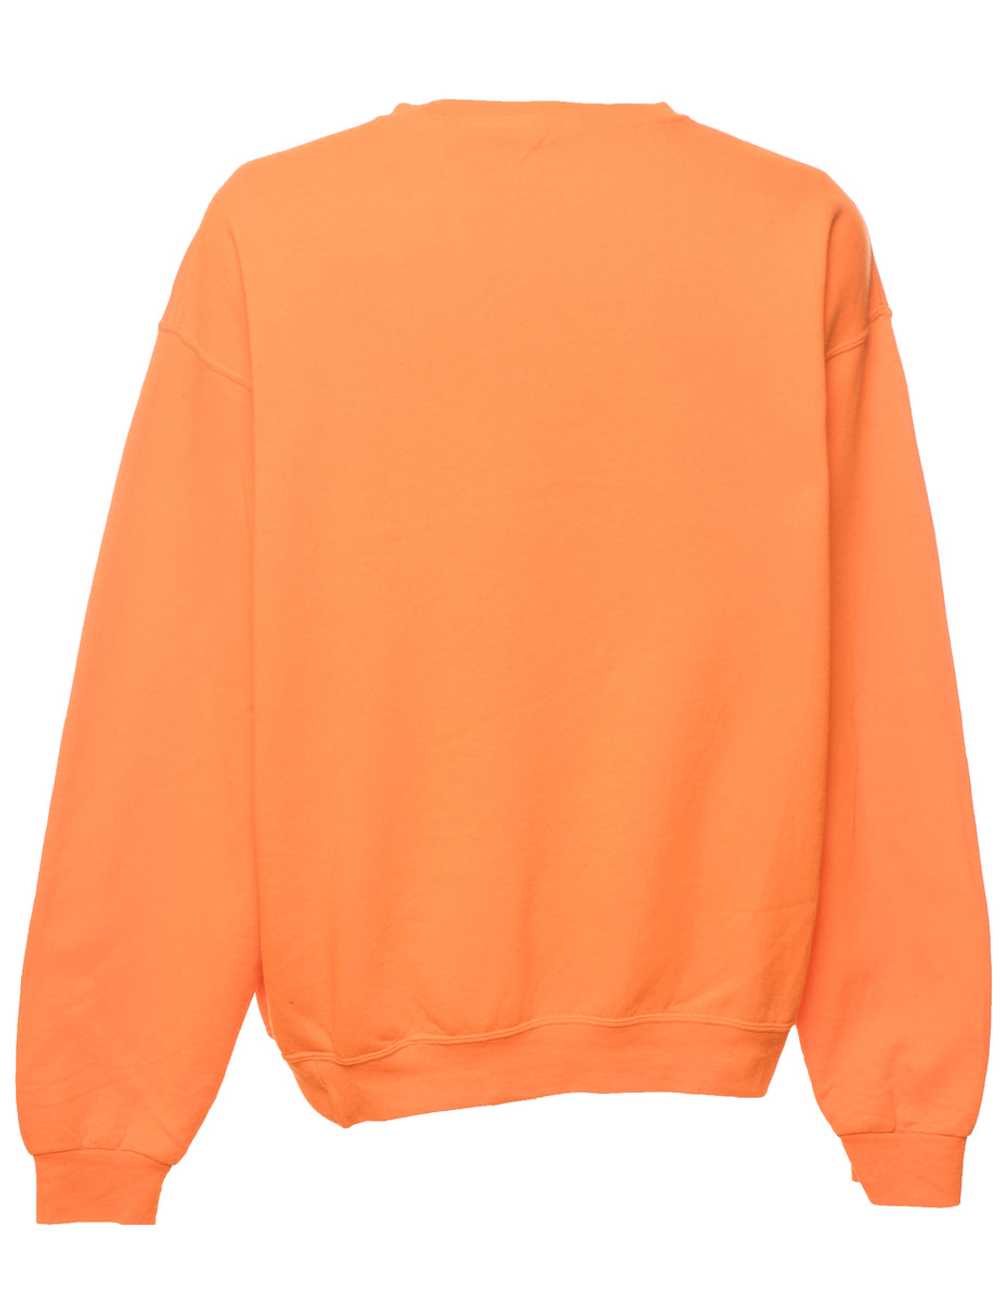 Orange Plain Sweatshirt - XL - image 2